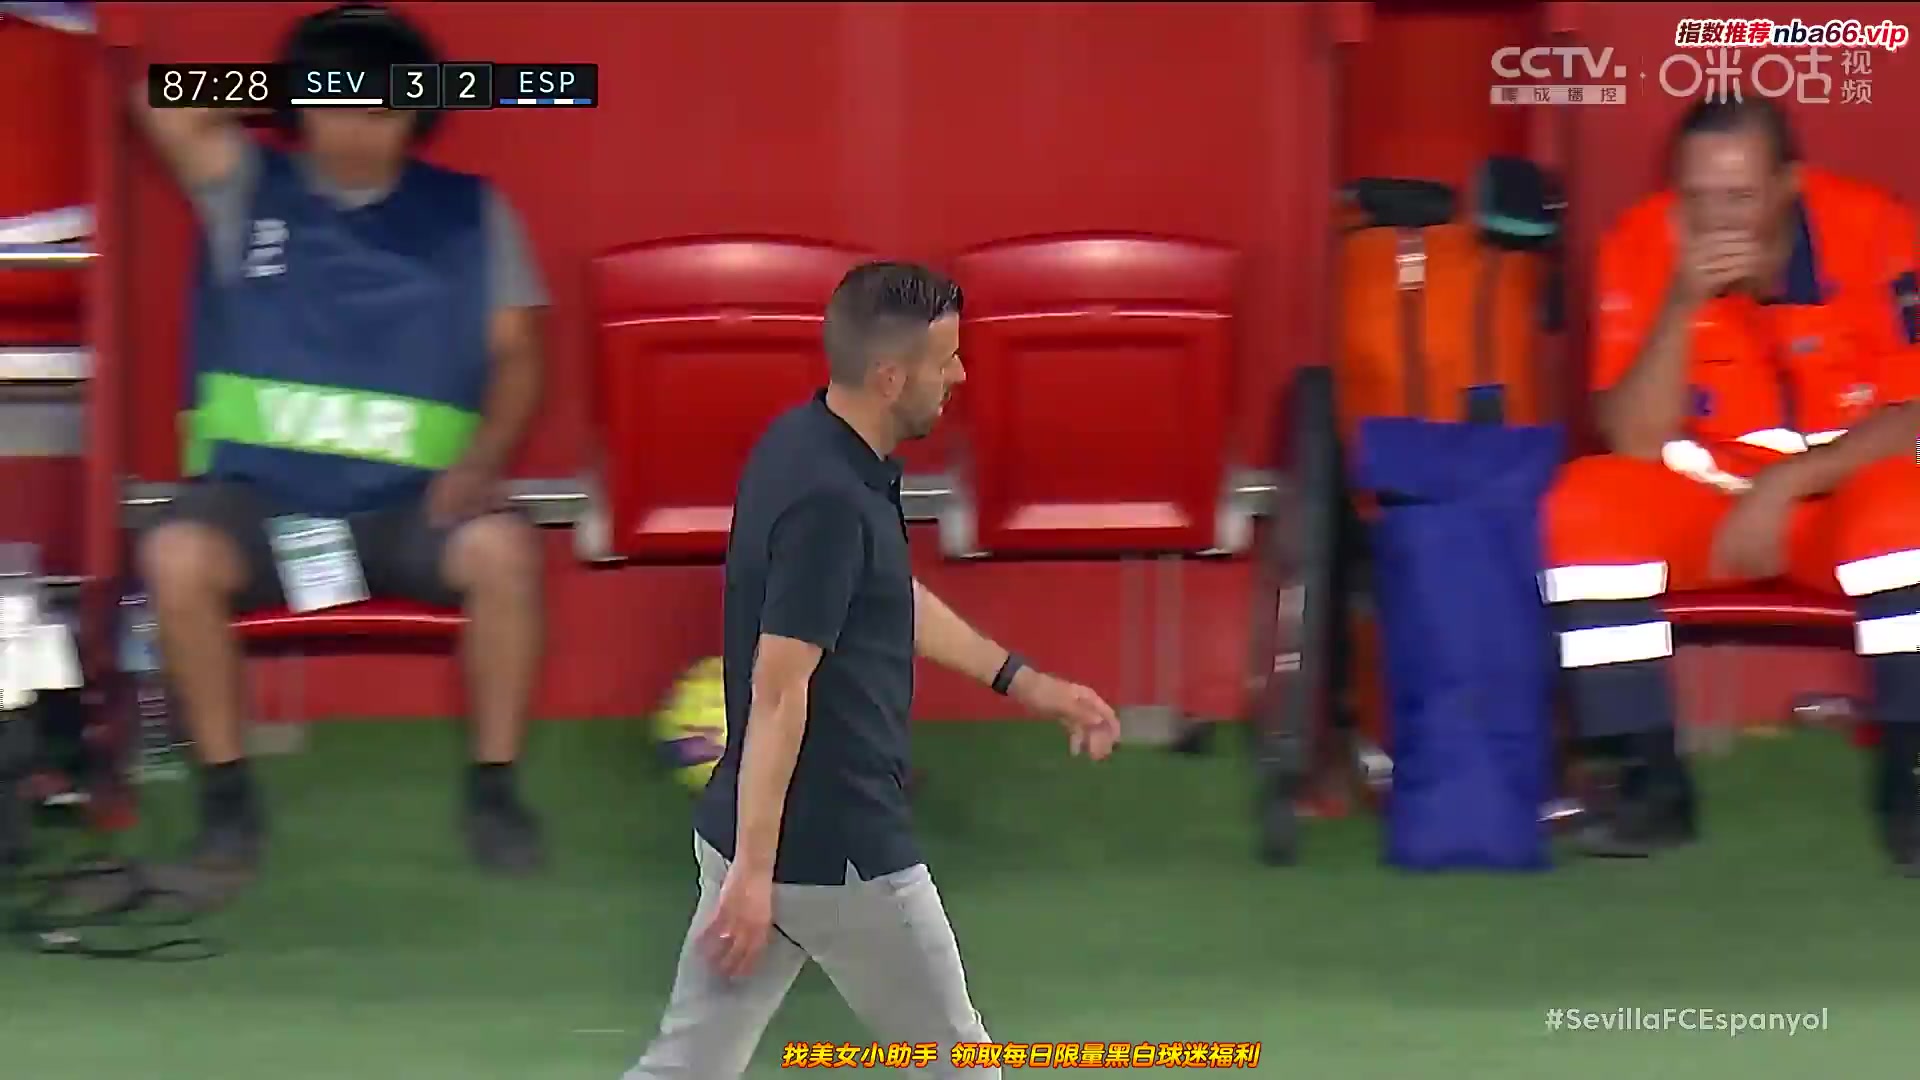 Laliga1 Sevilla Vs RCD Espanyol  Goal in 87 min, Score 3:2